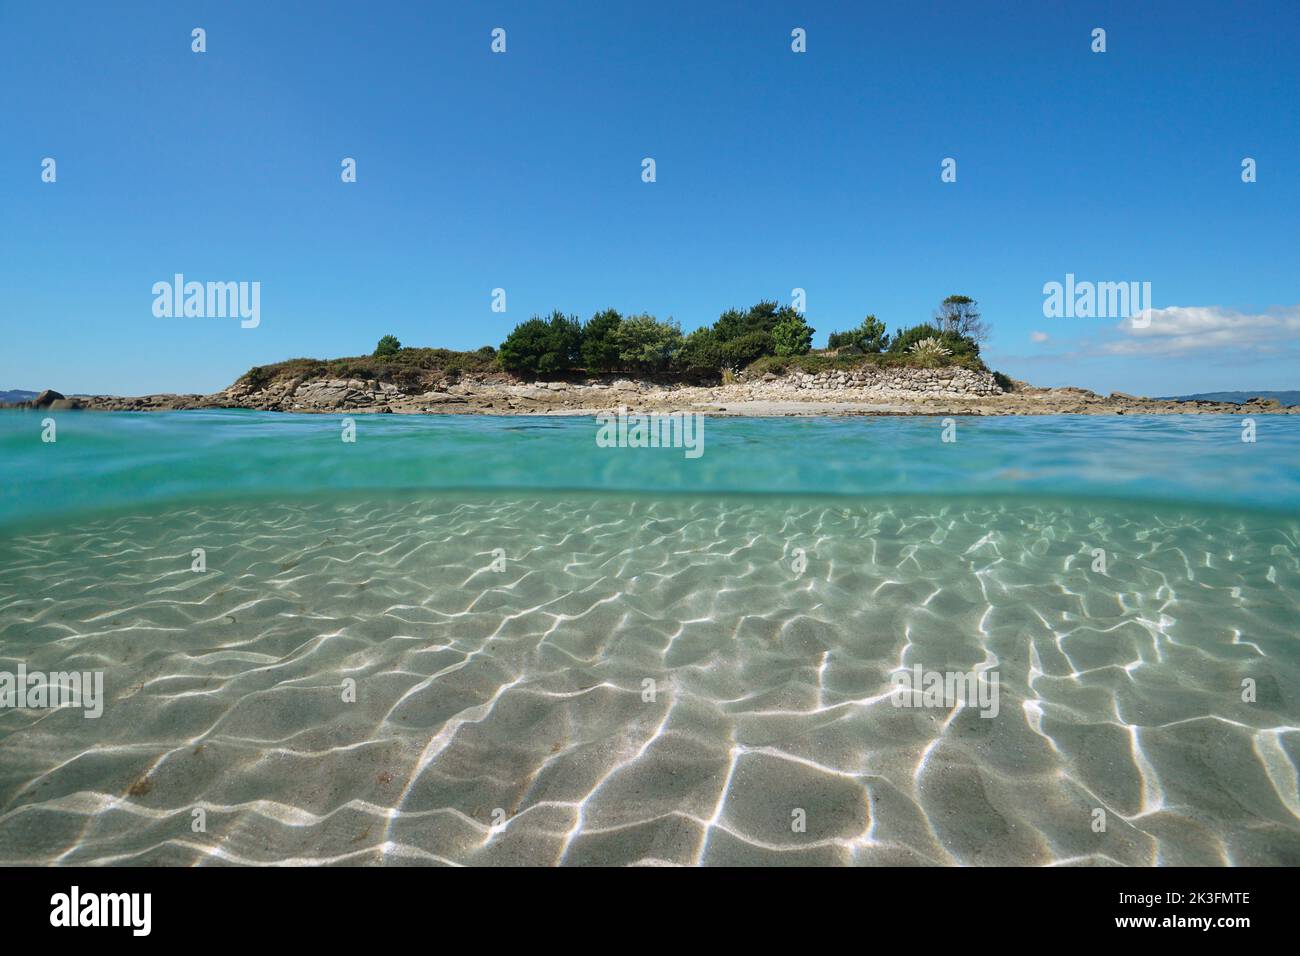 Kleine Insel von der Meeresoberfläche aus gesehen mit Sand unter Wasser, Spanien, Galizien, Rias Baixas, Illa do Santo do Mar, Atlantik, Split Level View Stockfoto